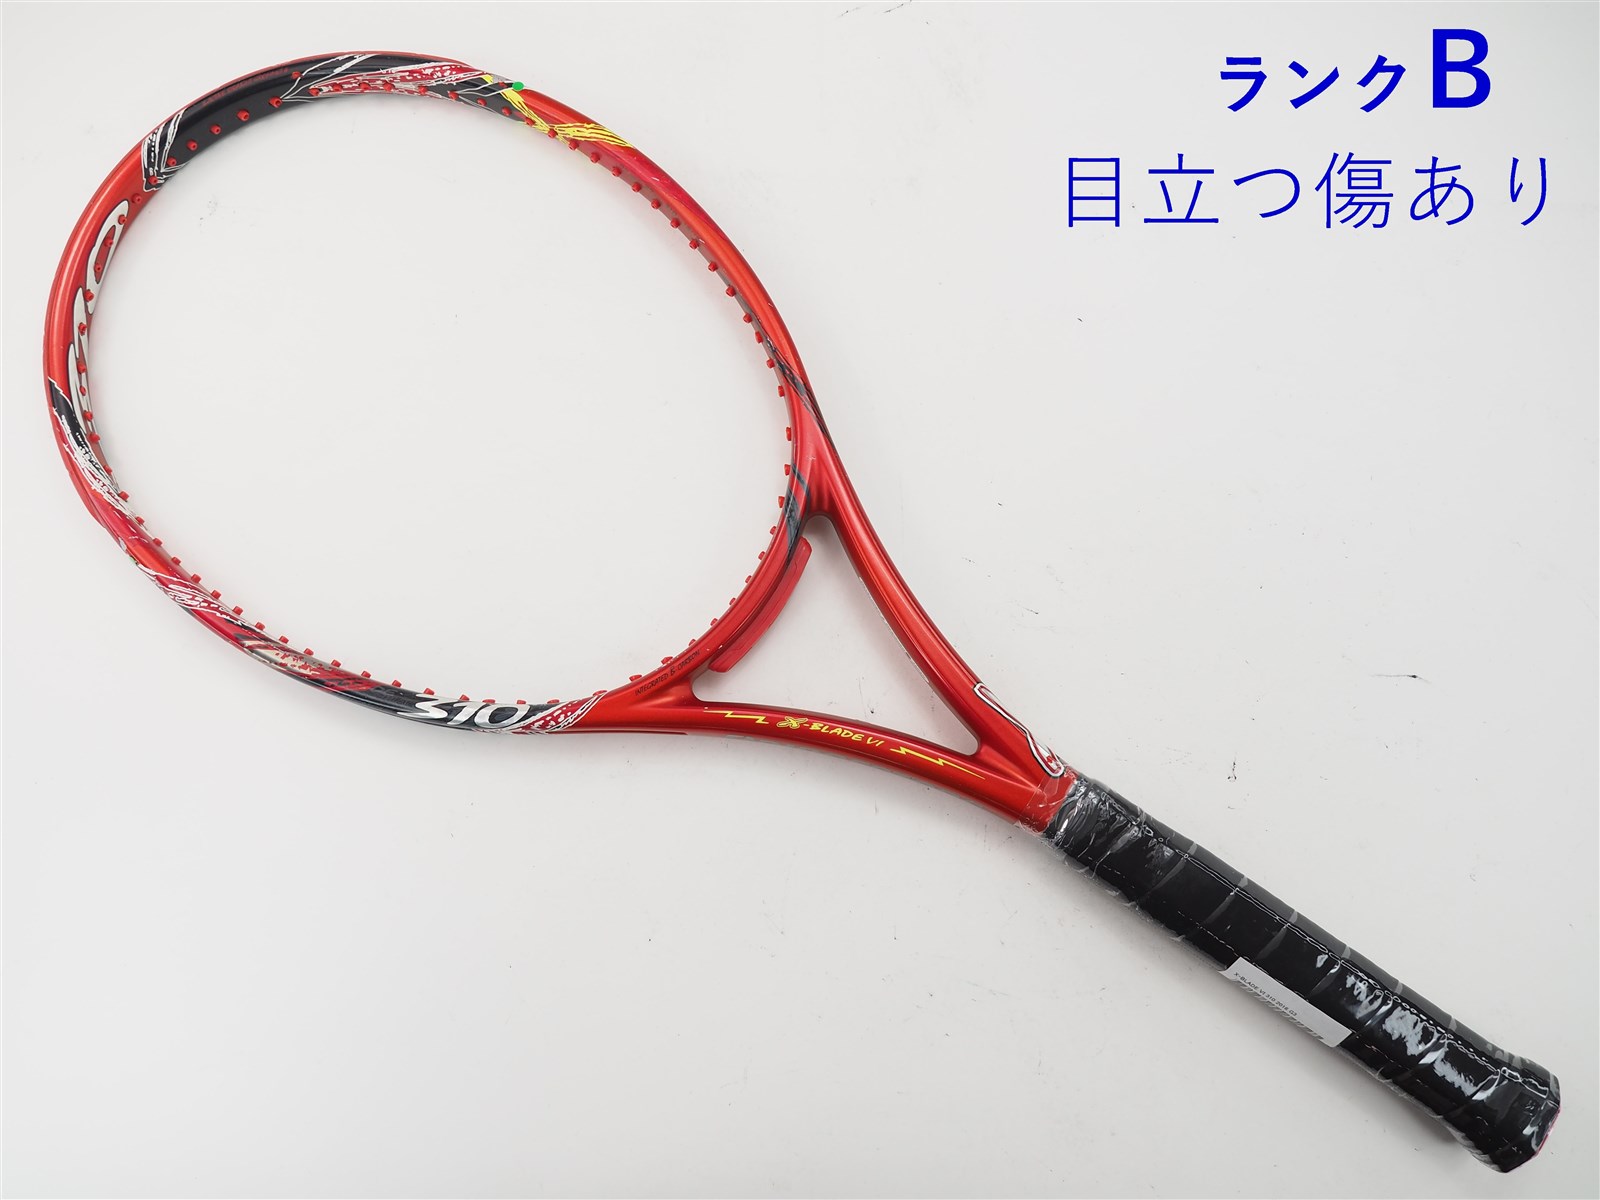 テニスラケット ブリヂストン エックスブレード ブイアイ 310 2016年モデル (G3)BRIDGESTONE X-BLADE VI 310 201695平方インチ長さ